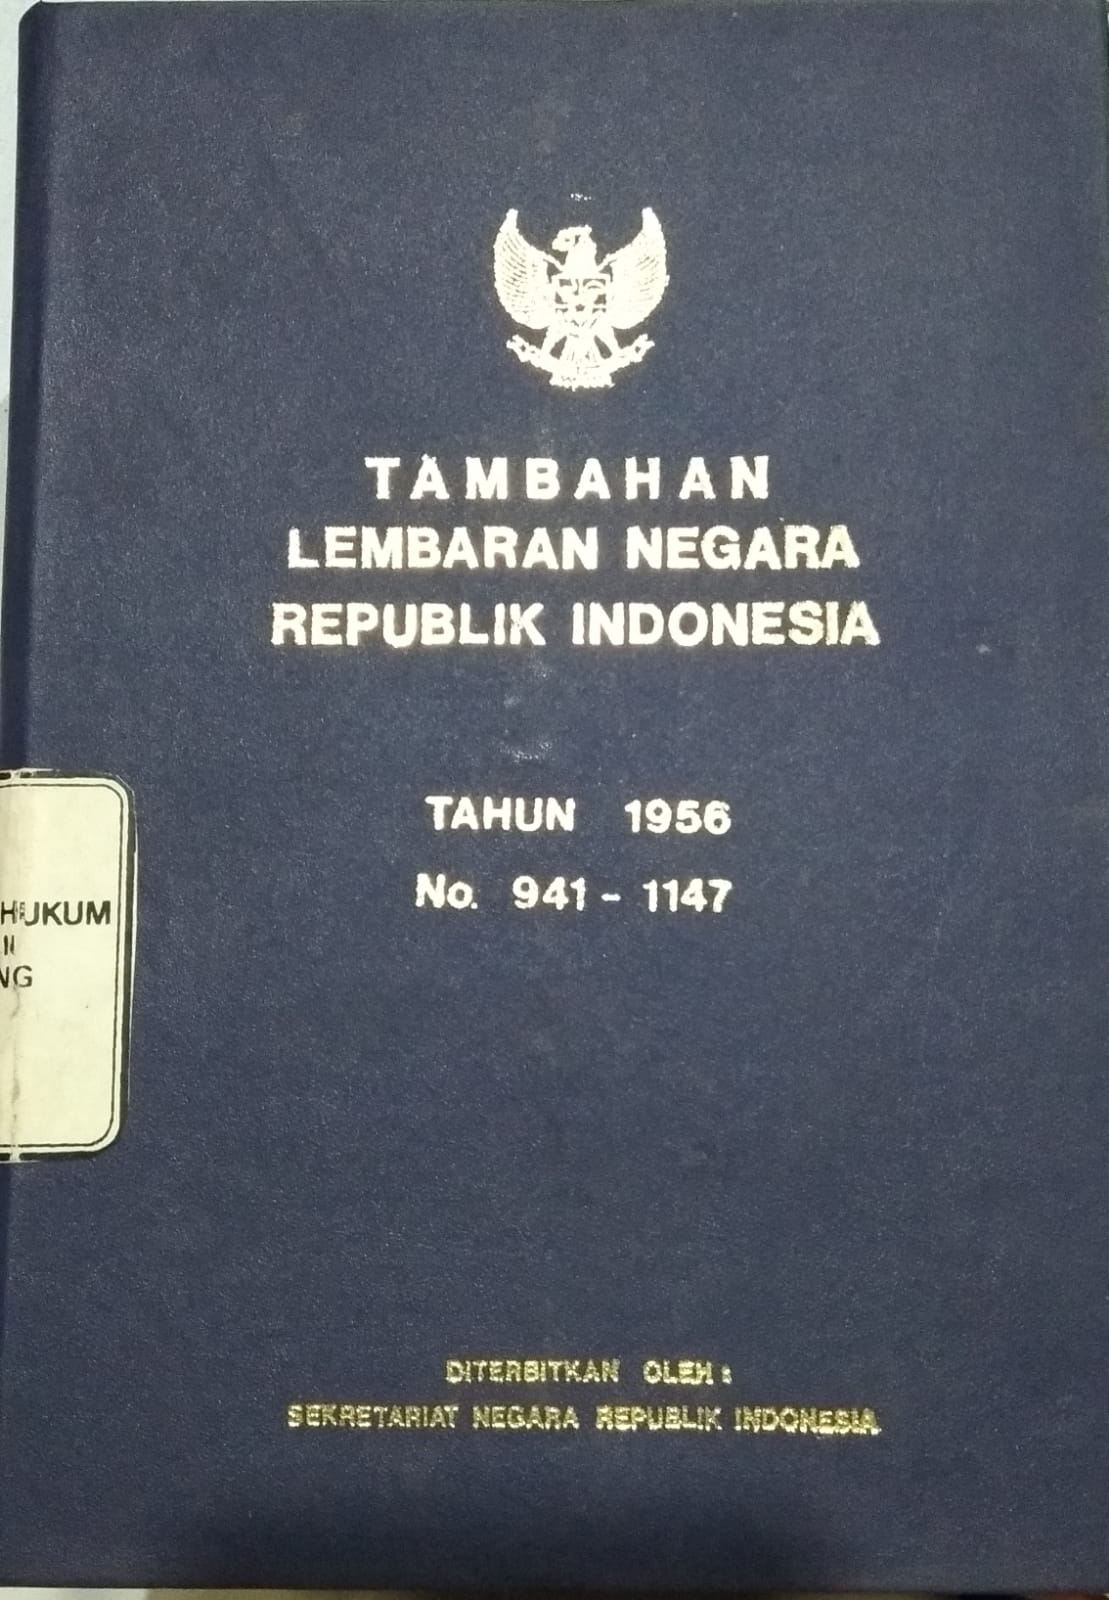 TAMBAHAN LEMBARAN NEGARA REPUBLIK INDONESIA TAHUN 1956 NO. 941-1147